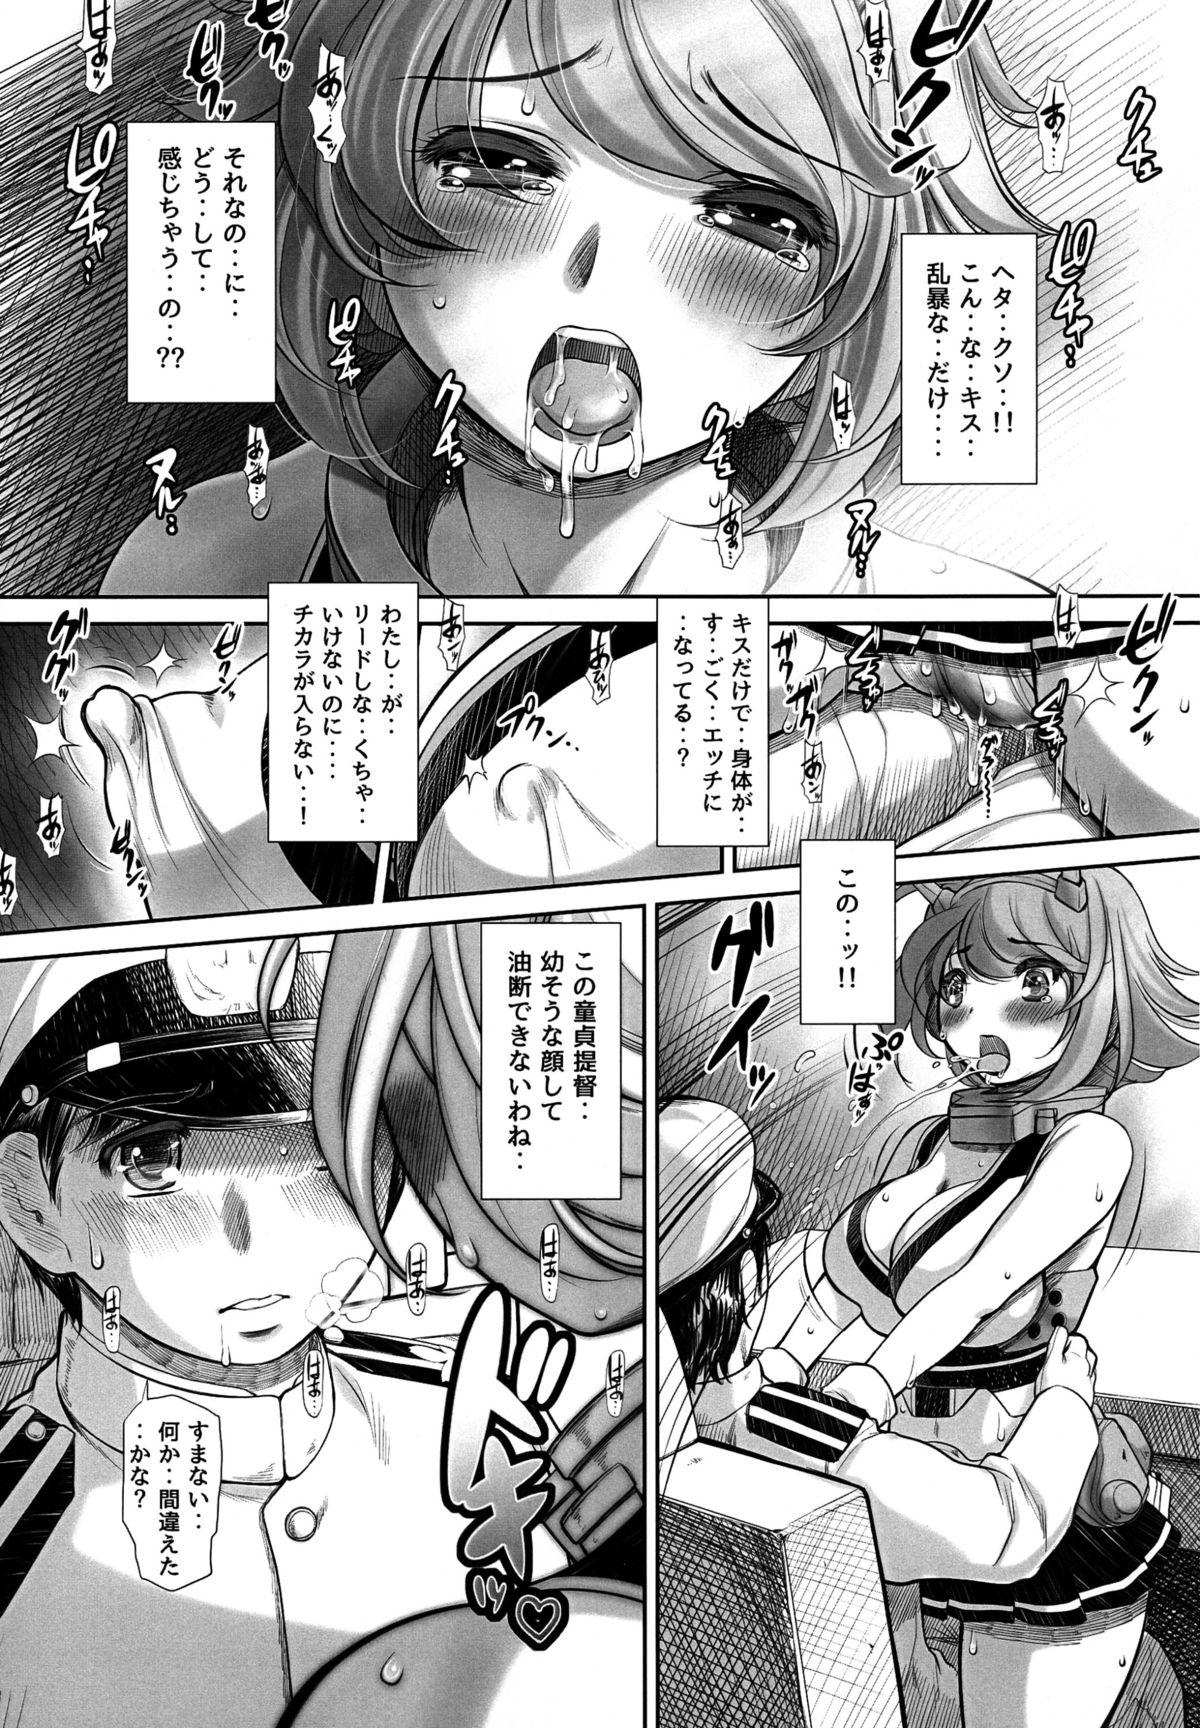 Francaise Doutei ga Yurusareru no wa Shousa made dayo ne? - Kantai collection Plumper - Page 9